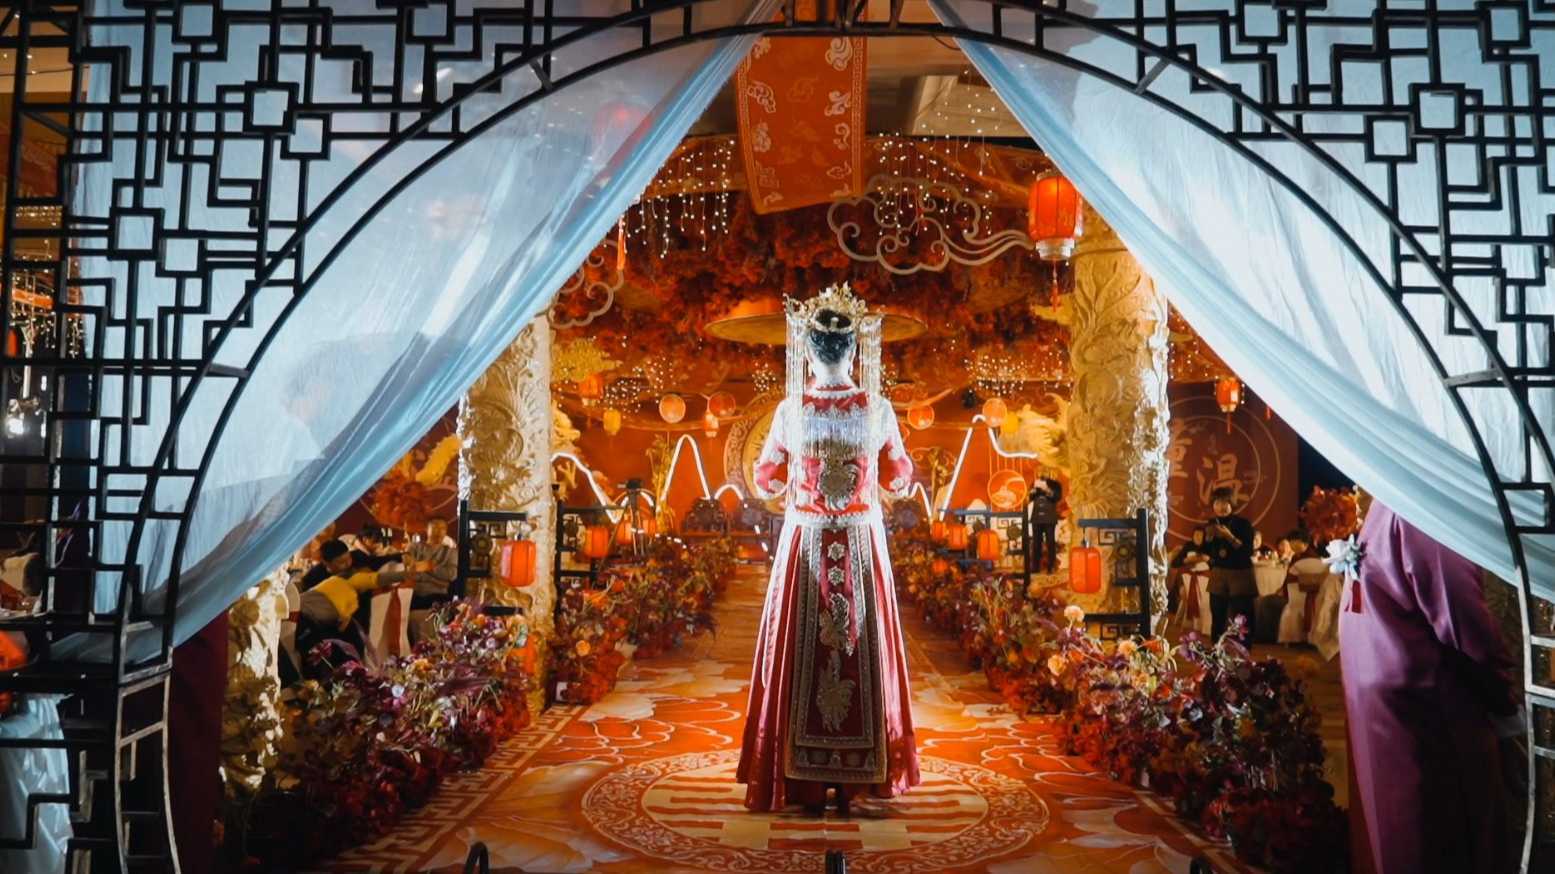 花嫁国际-中式婚礼全程回放,中视新传媒影视摄制